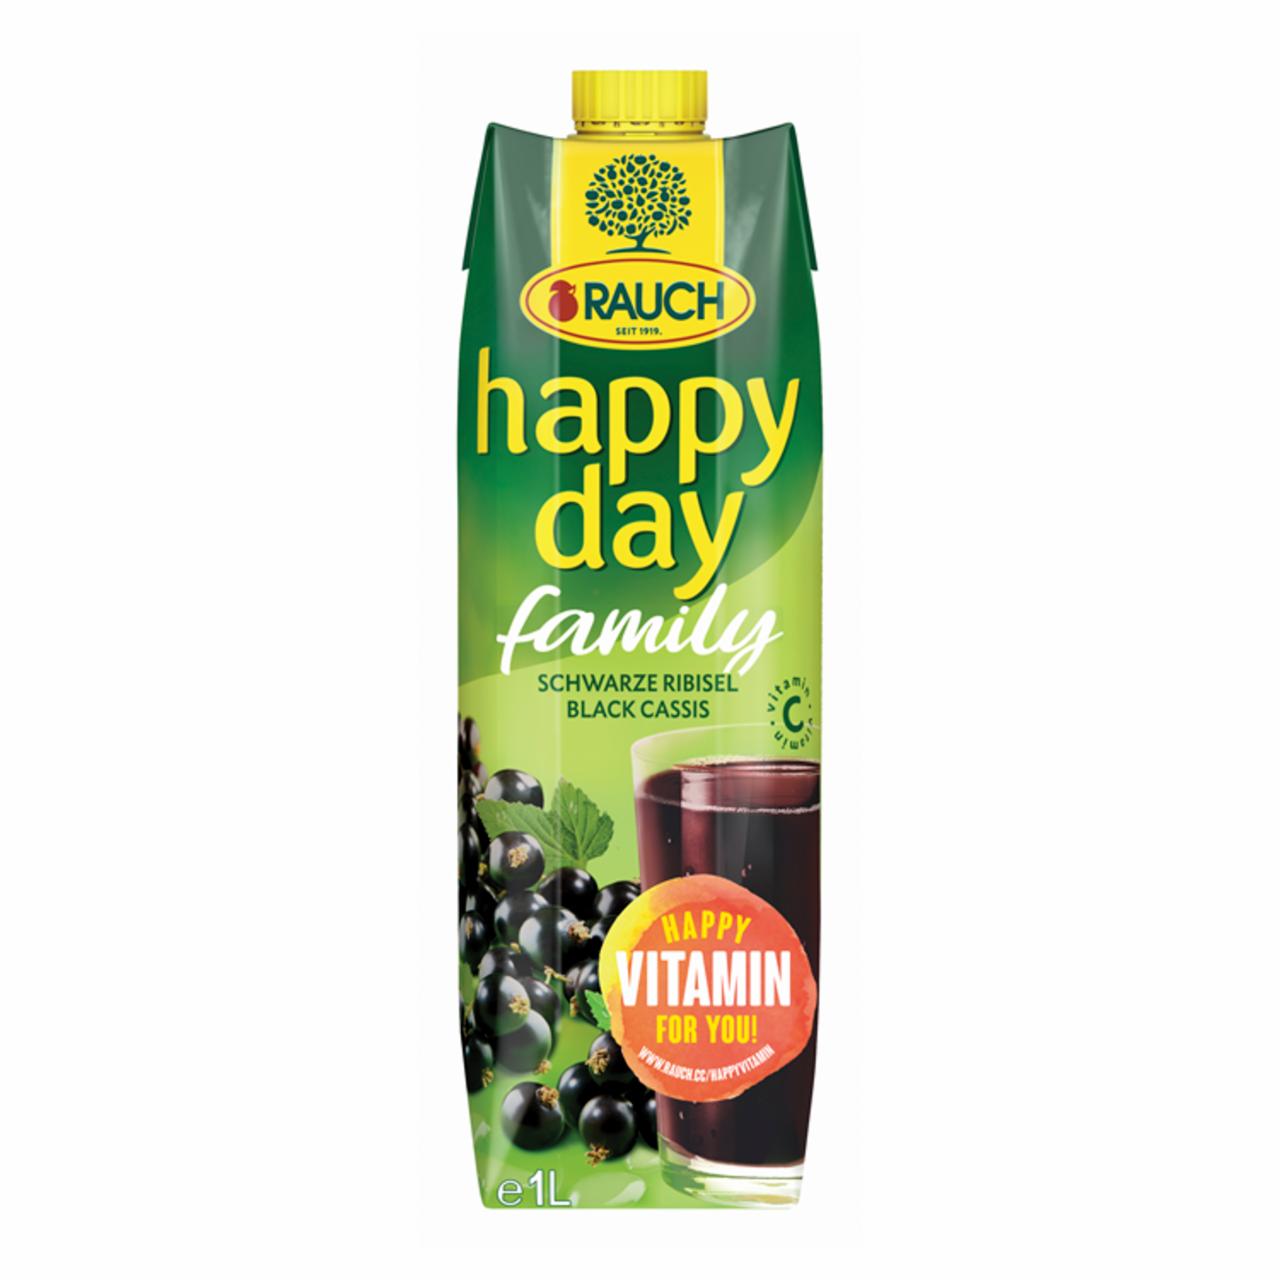 Képek - Rauch Happy Day feketeribizli nektár sűrítményből, C-vitaminnal 1 l